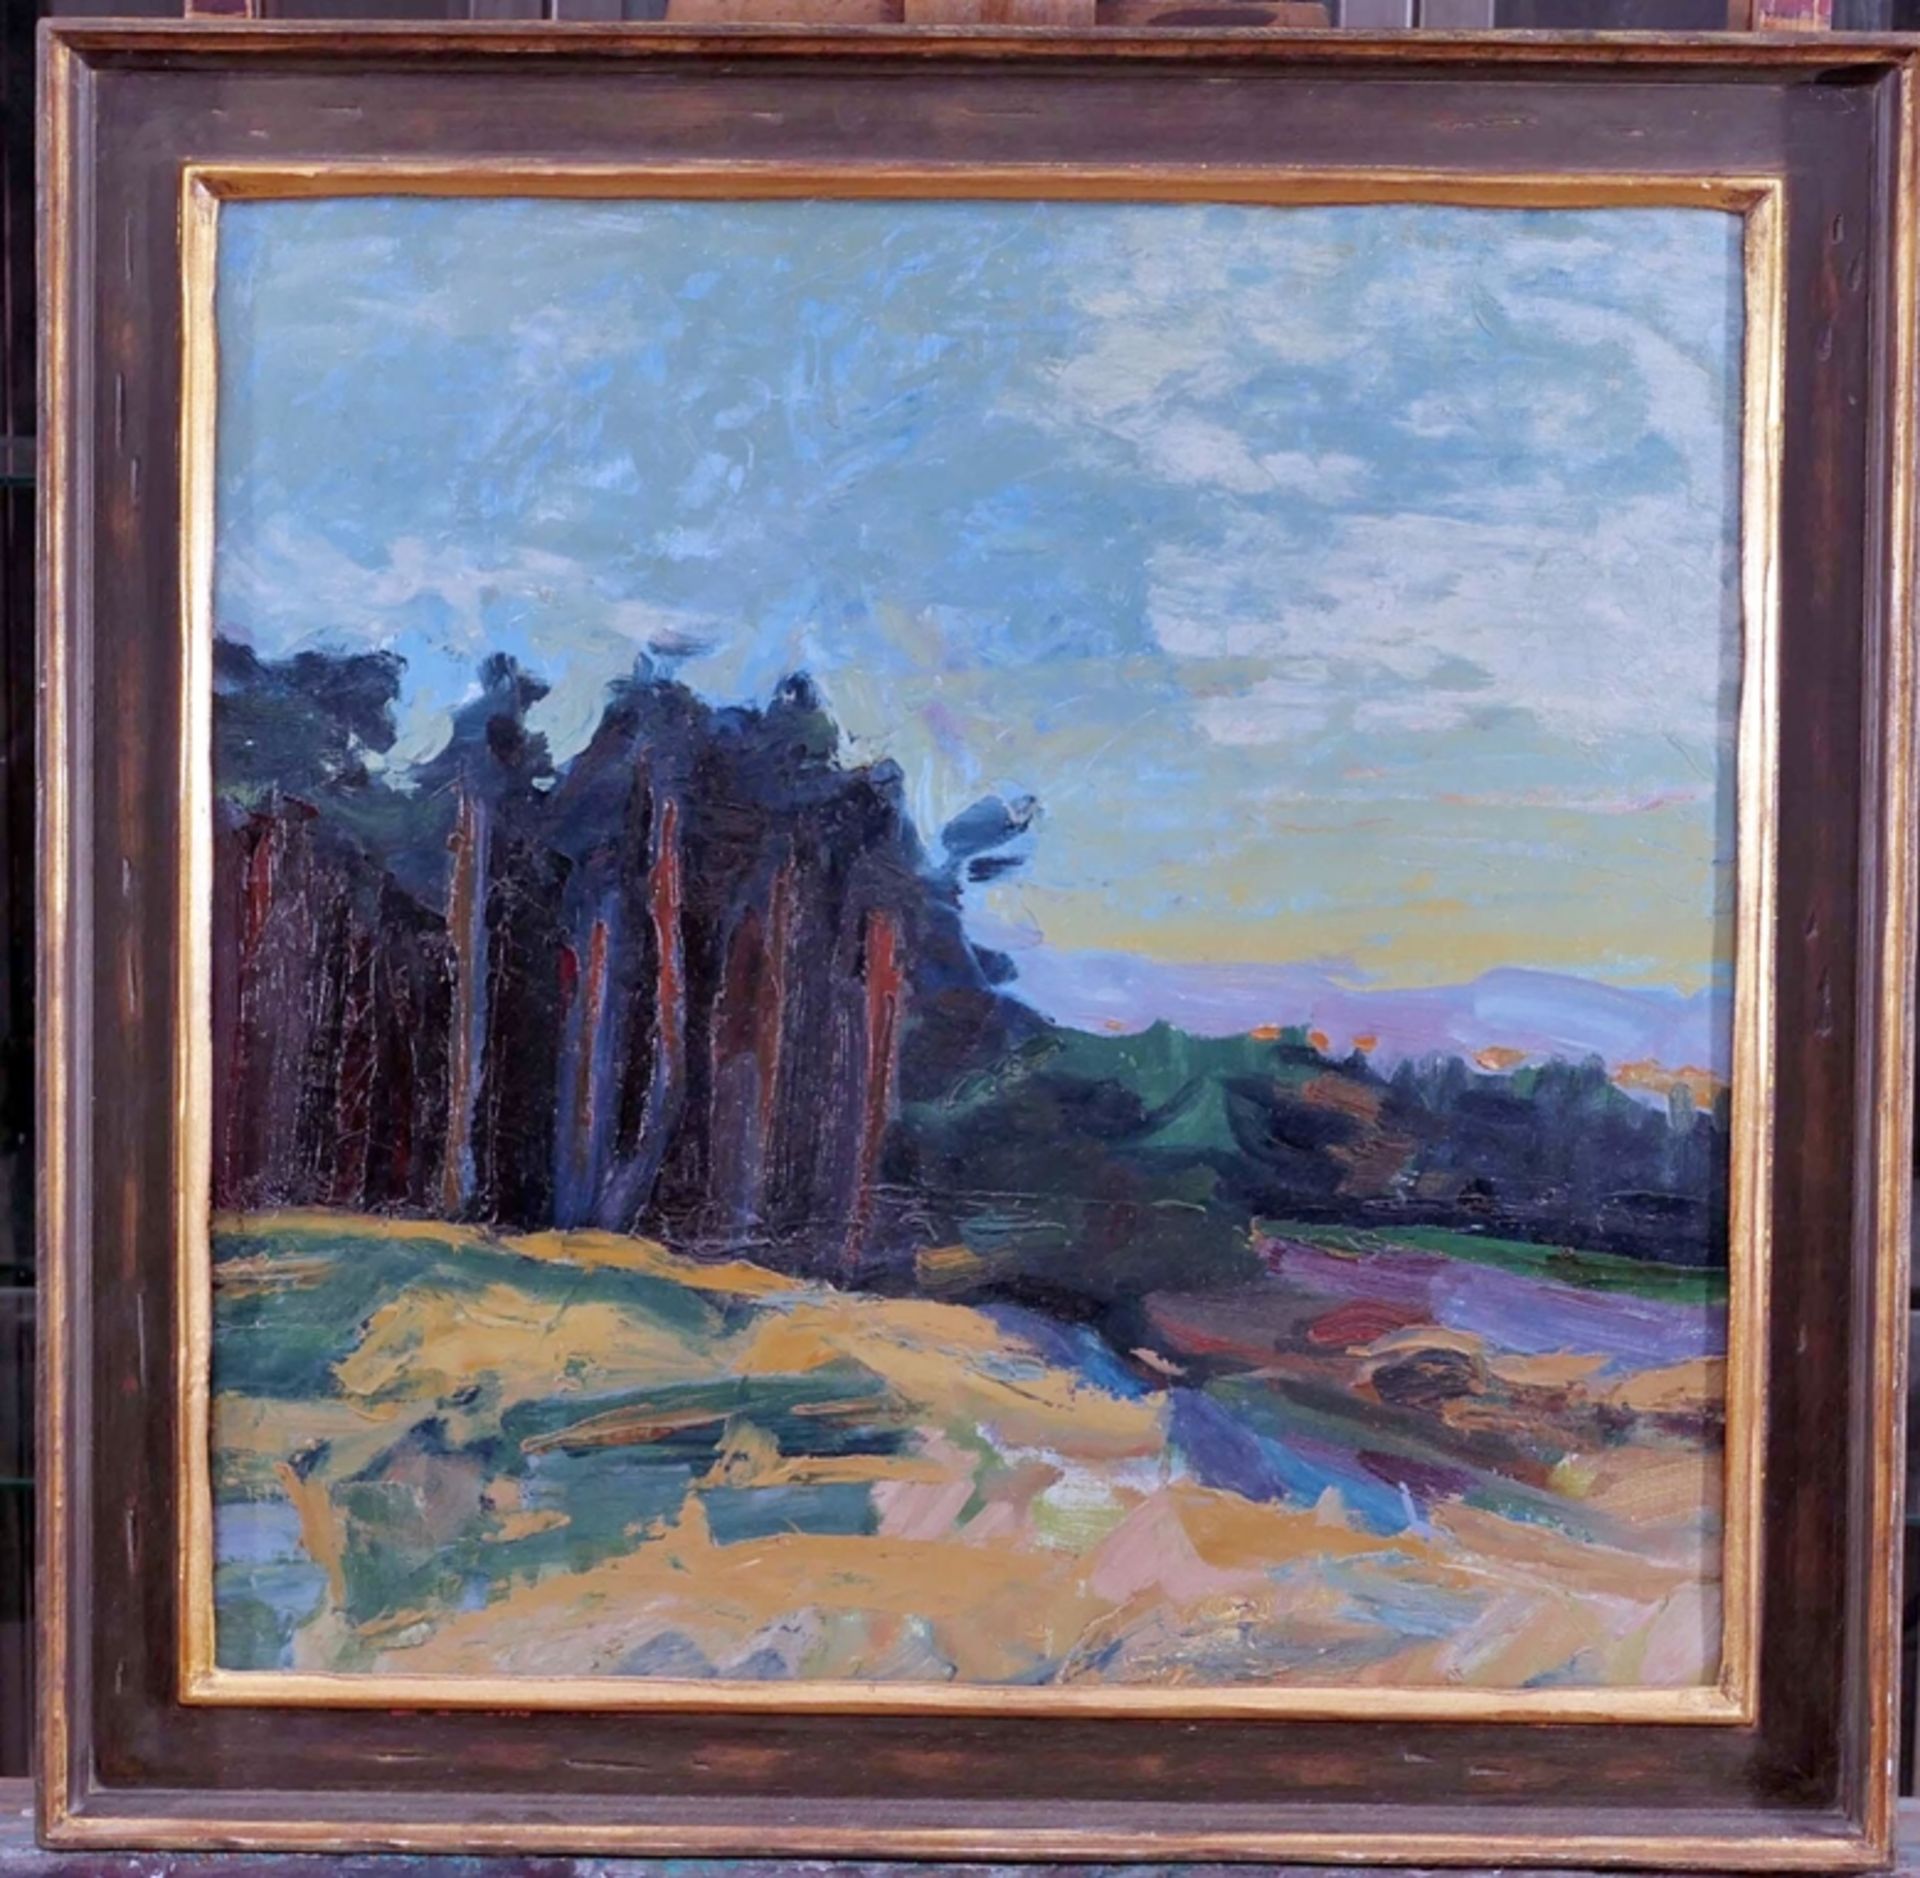 "Kiefernwald", Gemälde, Öl auf Leinwand, ca. 50 x 51 cm, unsigniert, rückseitig von fremder Hand be